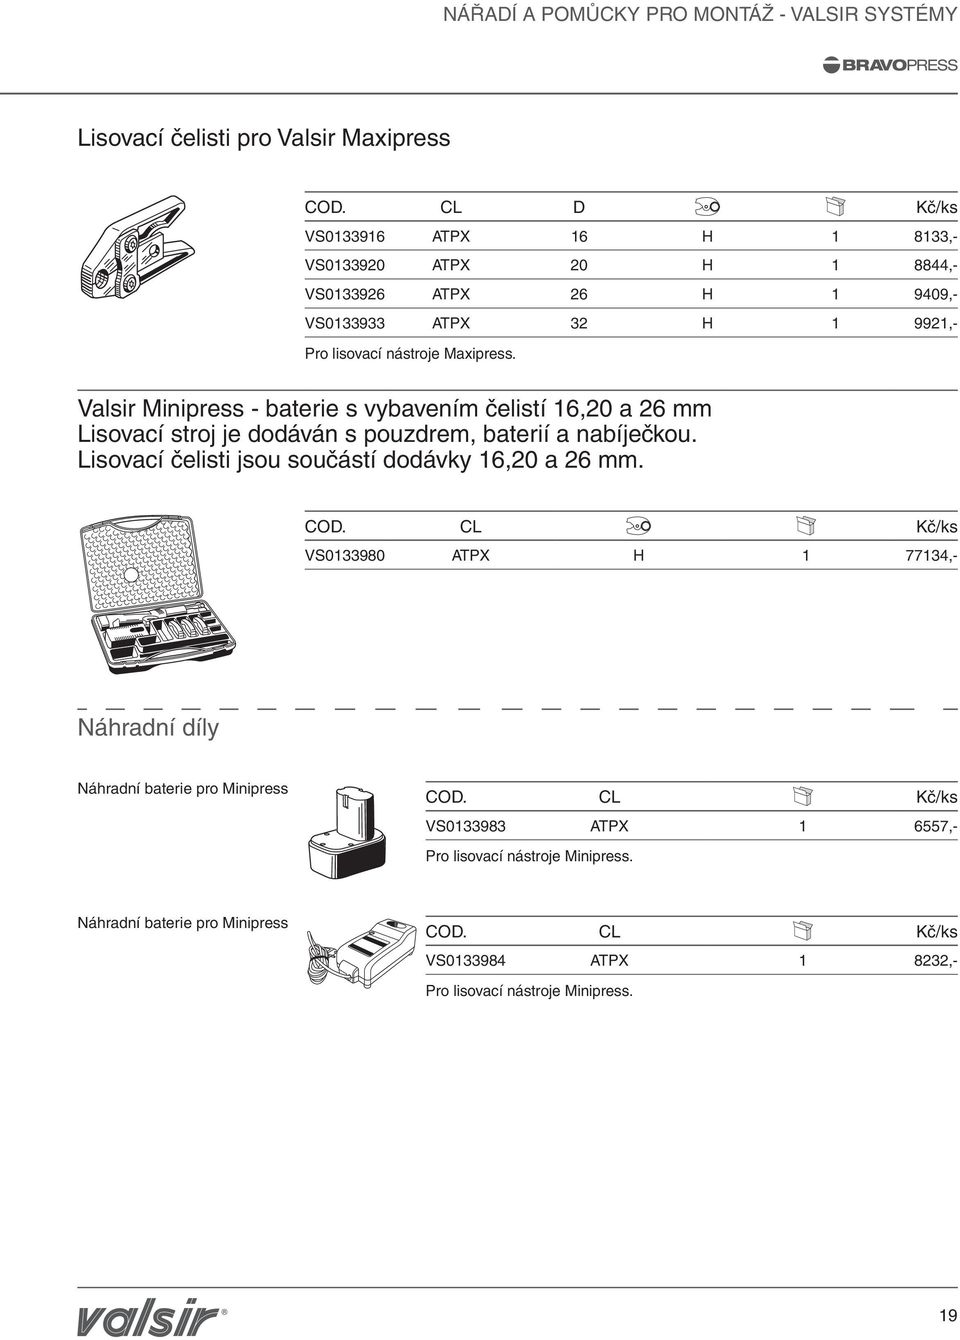 Valsir Minipress - baterie s vybavením čelistí 16,20 a 26 mm Lisovací stroj je dodáván s pouzdrem, baterií a nabíječkou.